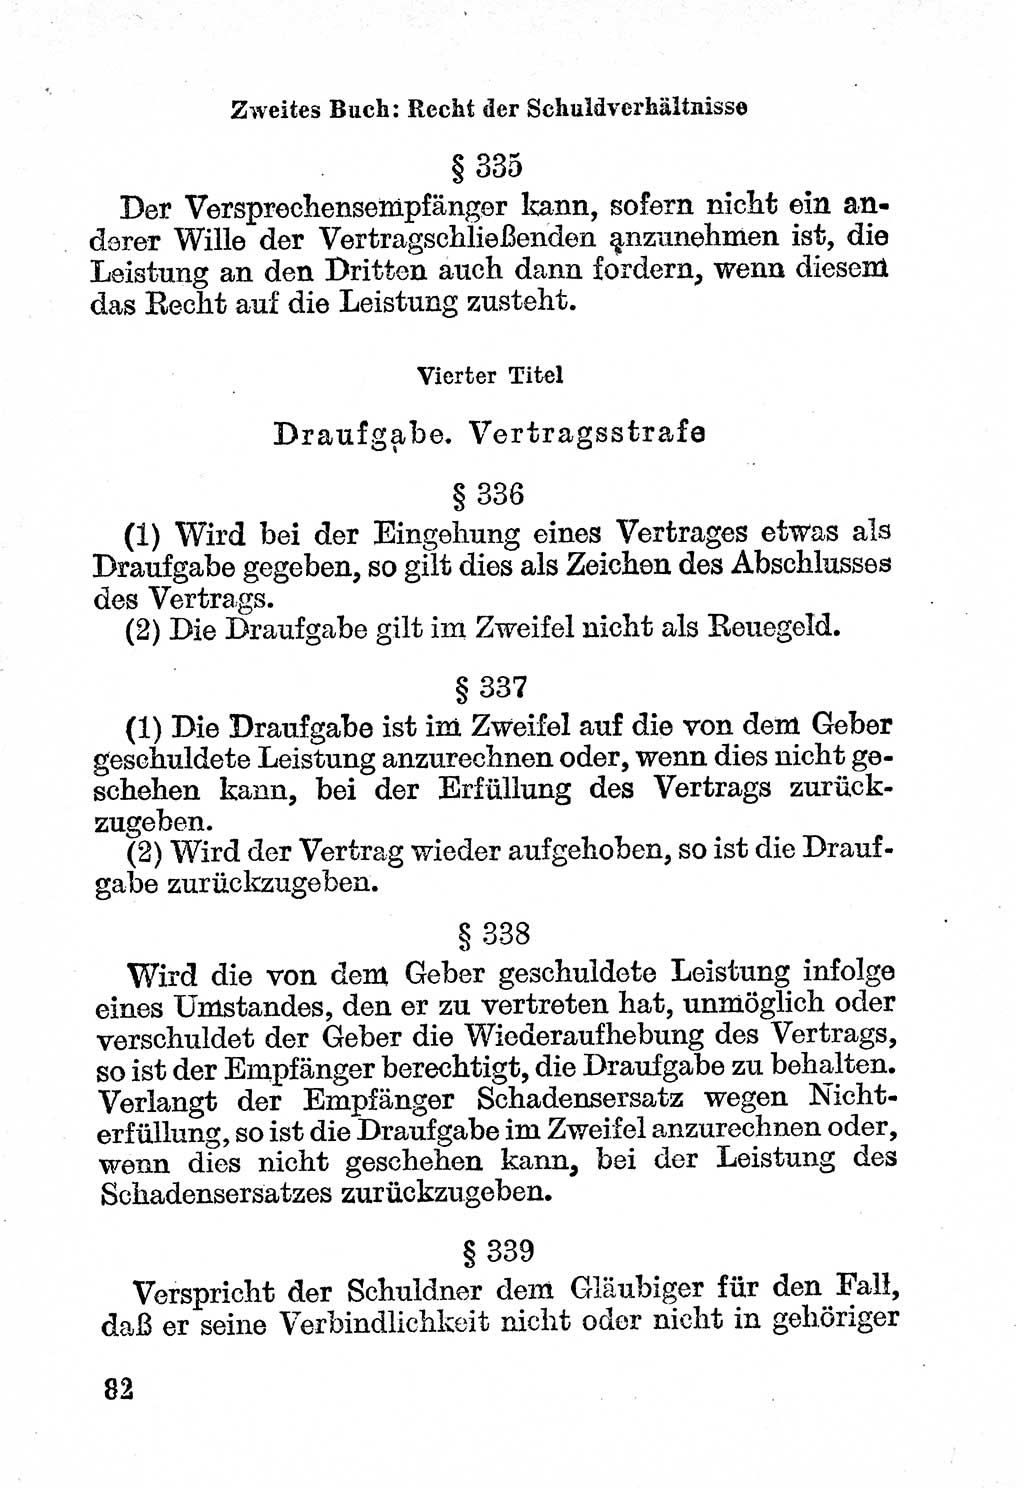 Bürgerliches Gesetzbuch (BGB) nebst wichtigen Nebengesetzen [Deutsche Demokratische Republik (DDR)] 1956, Seite 82 (BGB Nebenges. DDR 1956, S. 82)